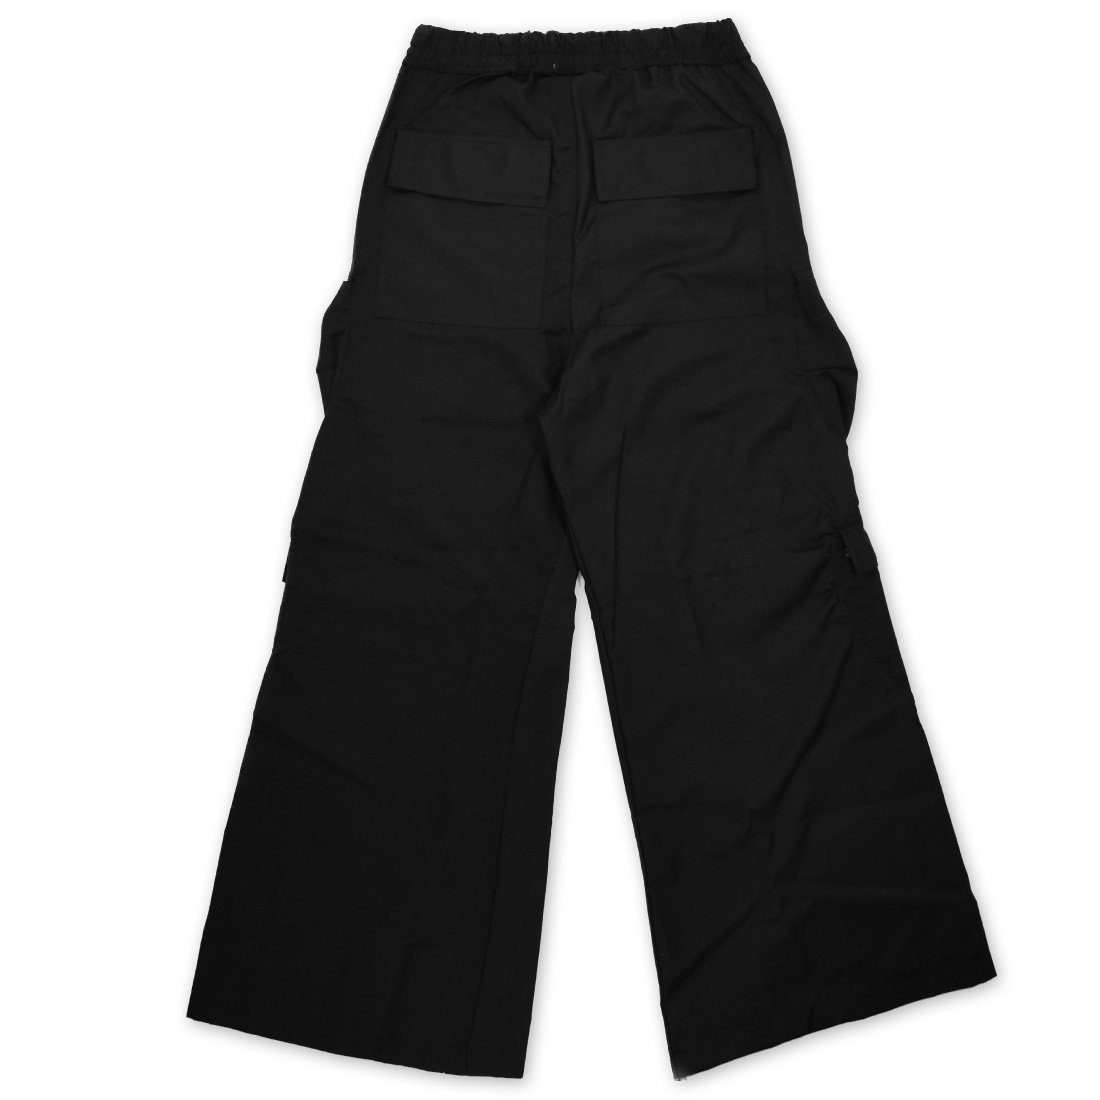 ウエスト365【mnml】RAVE DOUBLE CARGO PANTS BLACK S - パンツ